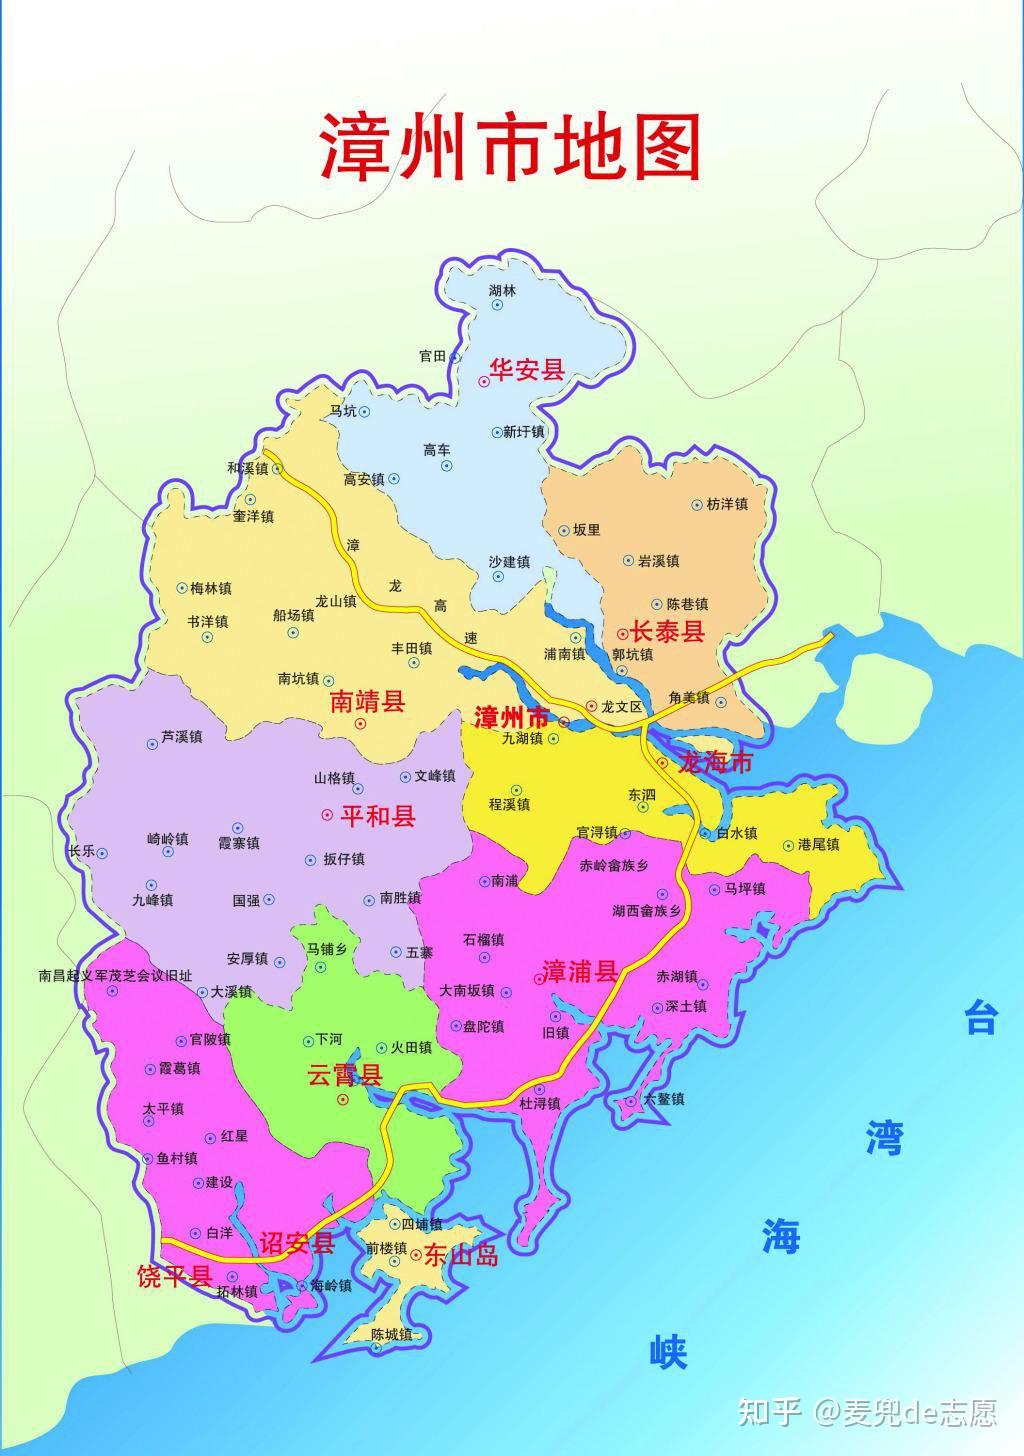 漳州市经济发展简析,龙海市总量最高,龙文区增速最快 